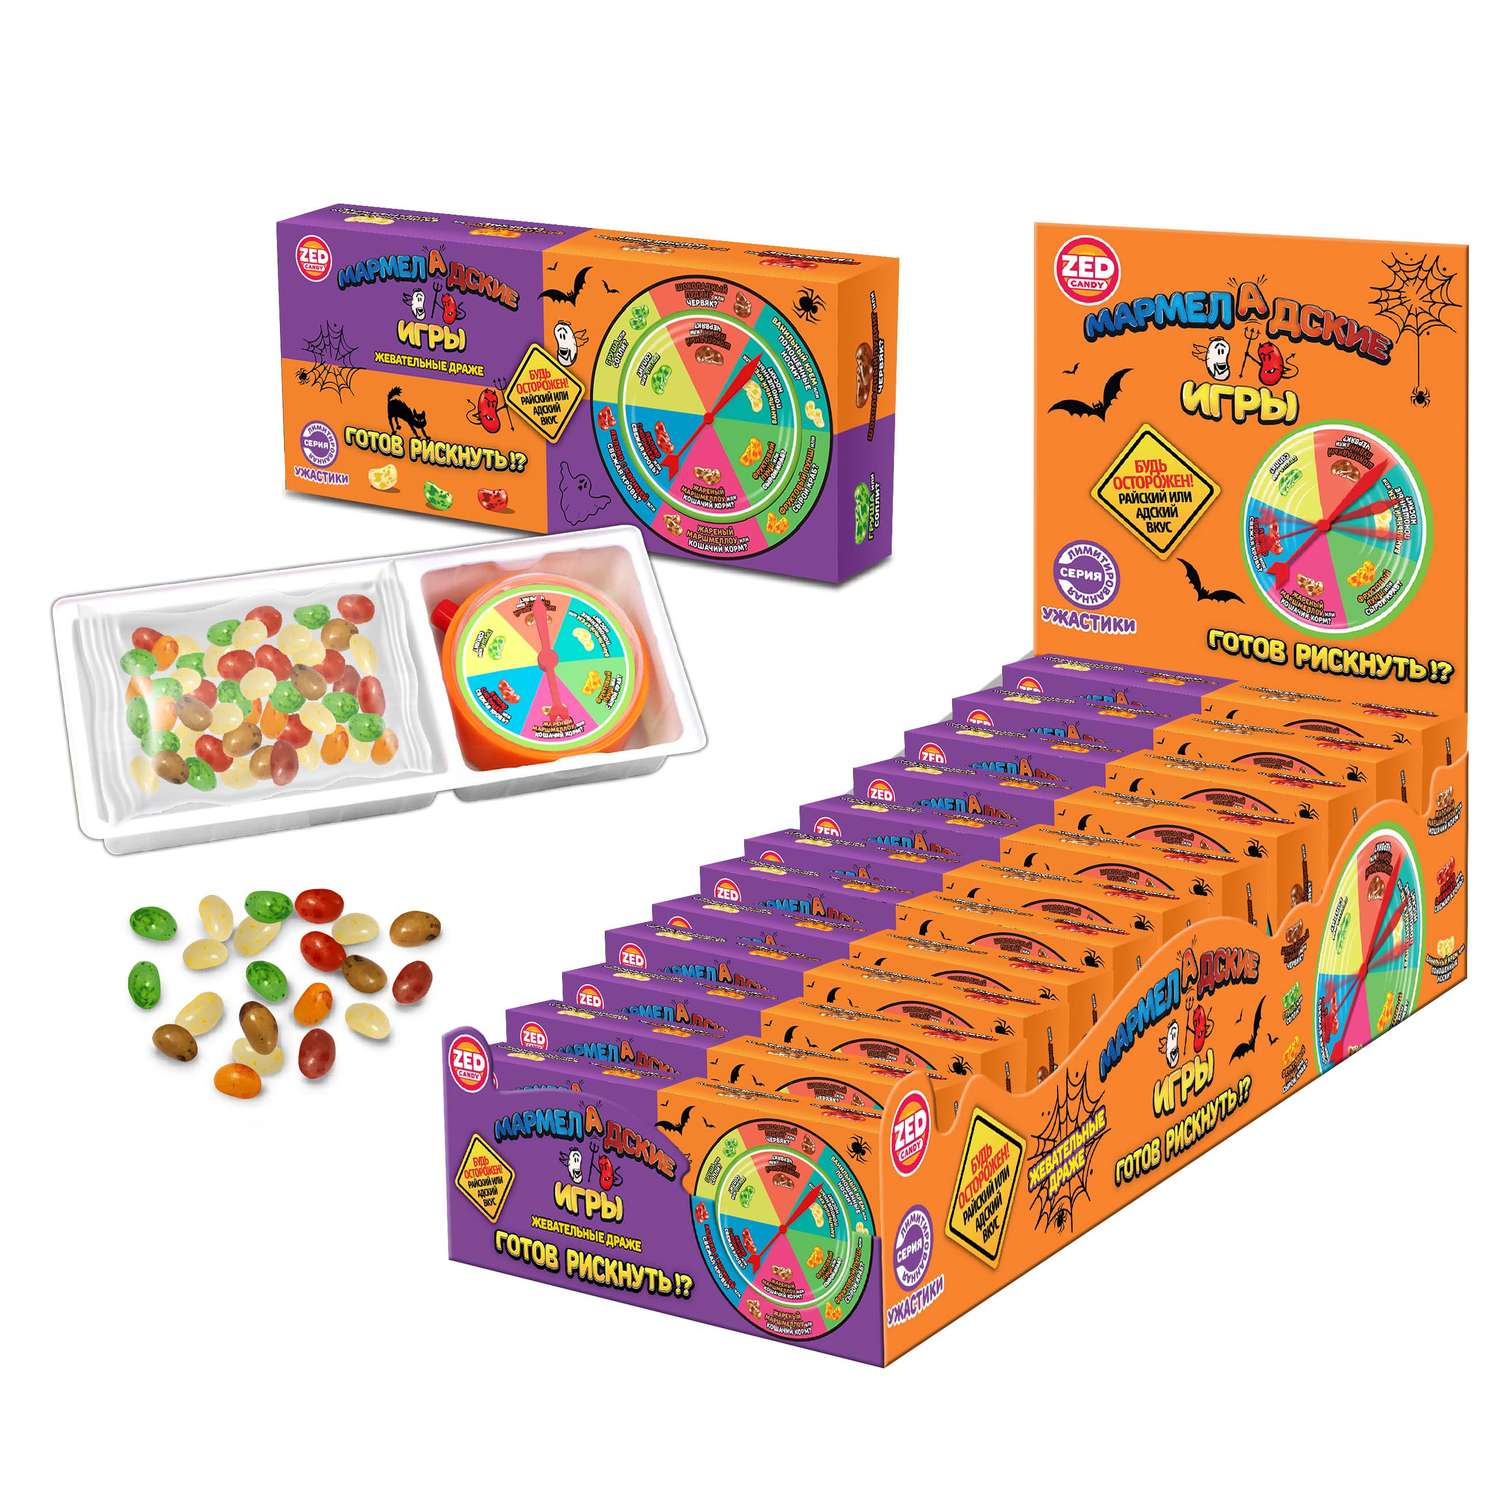 Необычные конфеты Мармеладские Игры с приколом острые и сладкие розыгрыш 12 вкусов 1 упаковка - фото 4